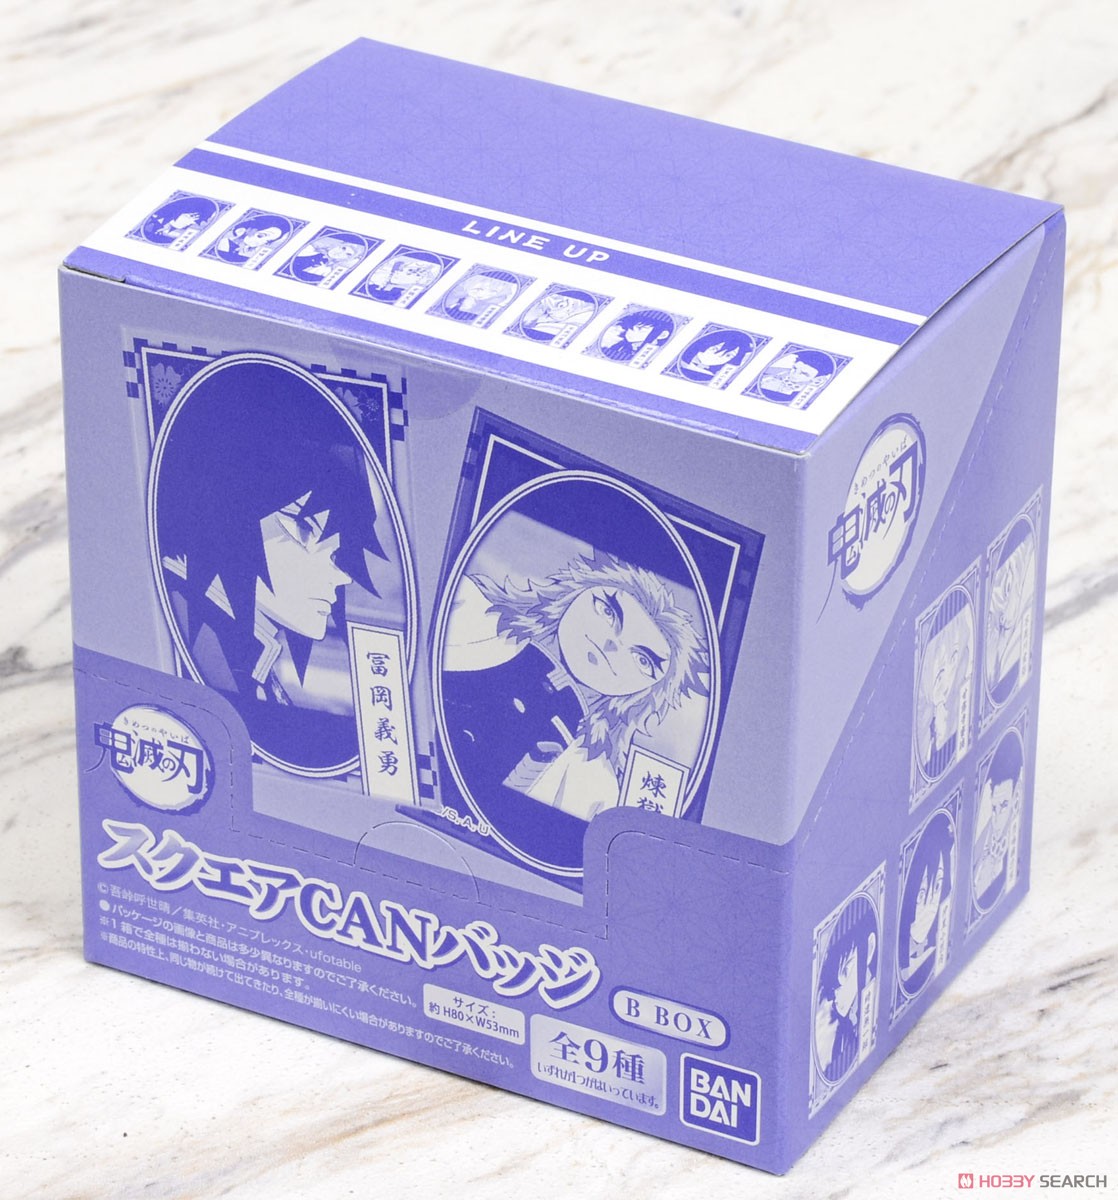 スクエアCANバッジ 鬼滅の刃 B BOX (10個セット) (キャラクターグッズ) パッケージ1